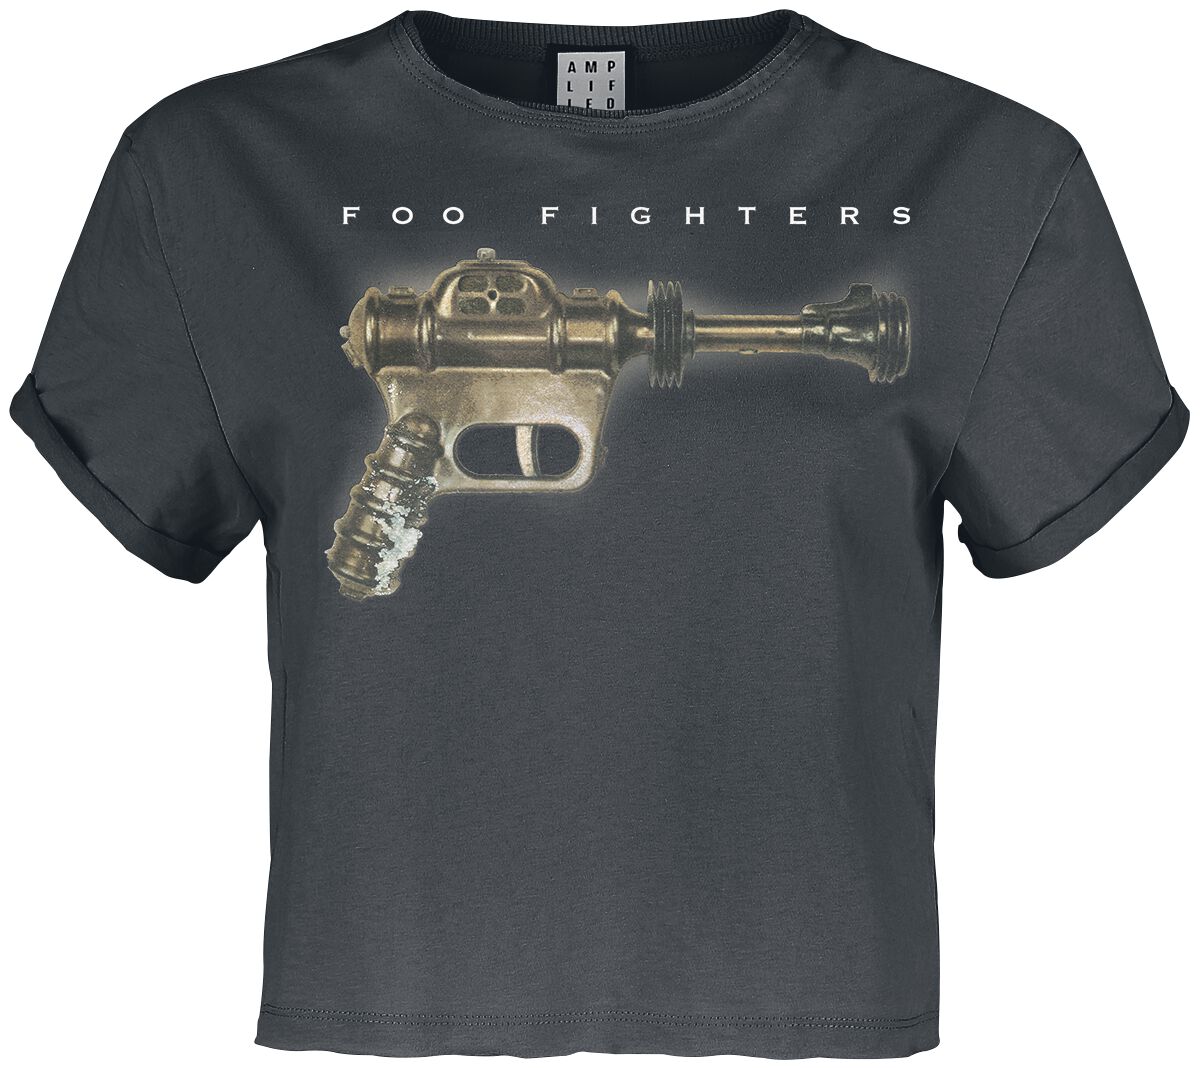 Foo Fighters T-Shirt - Amplified Collection - Ray Gun - XS bis XL - für Damen - Größe S - charcoal  - Lizenziertes Merchandise!